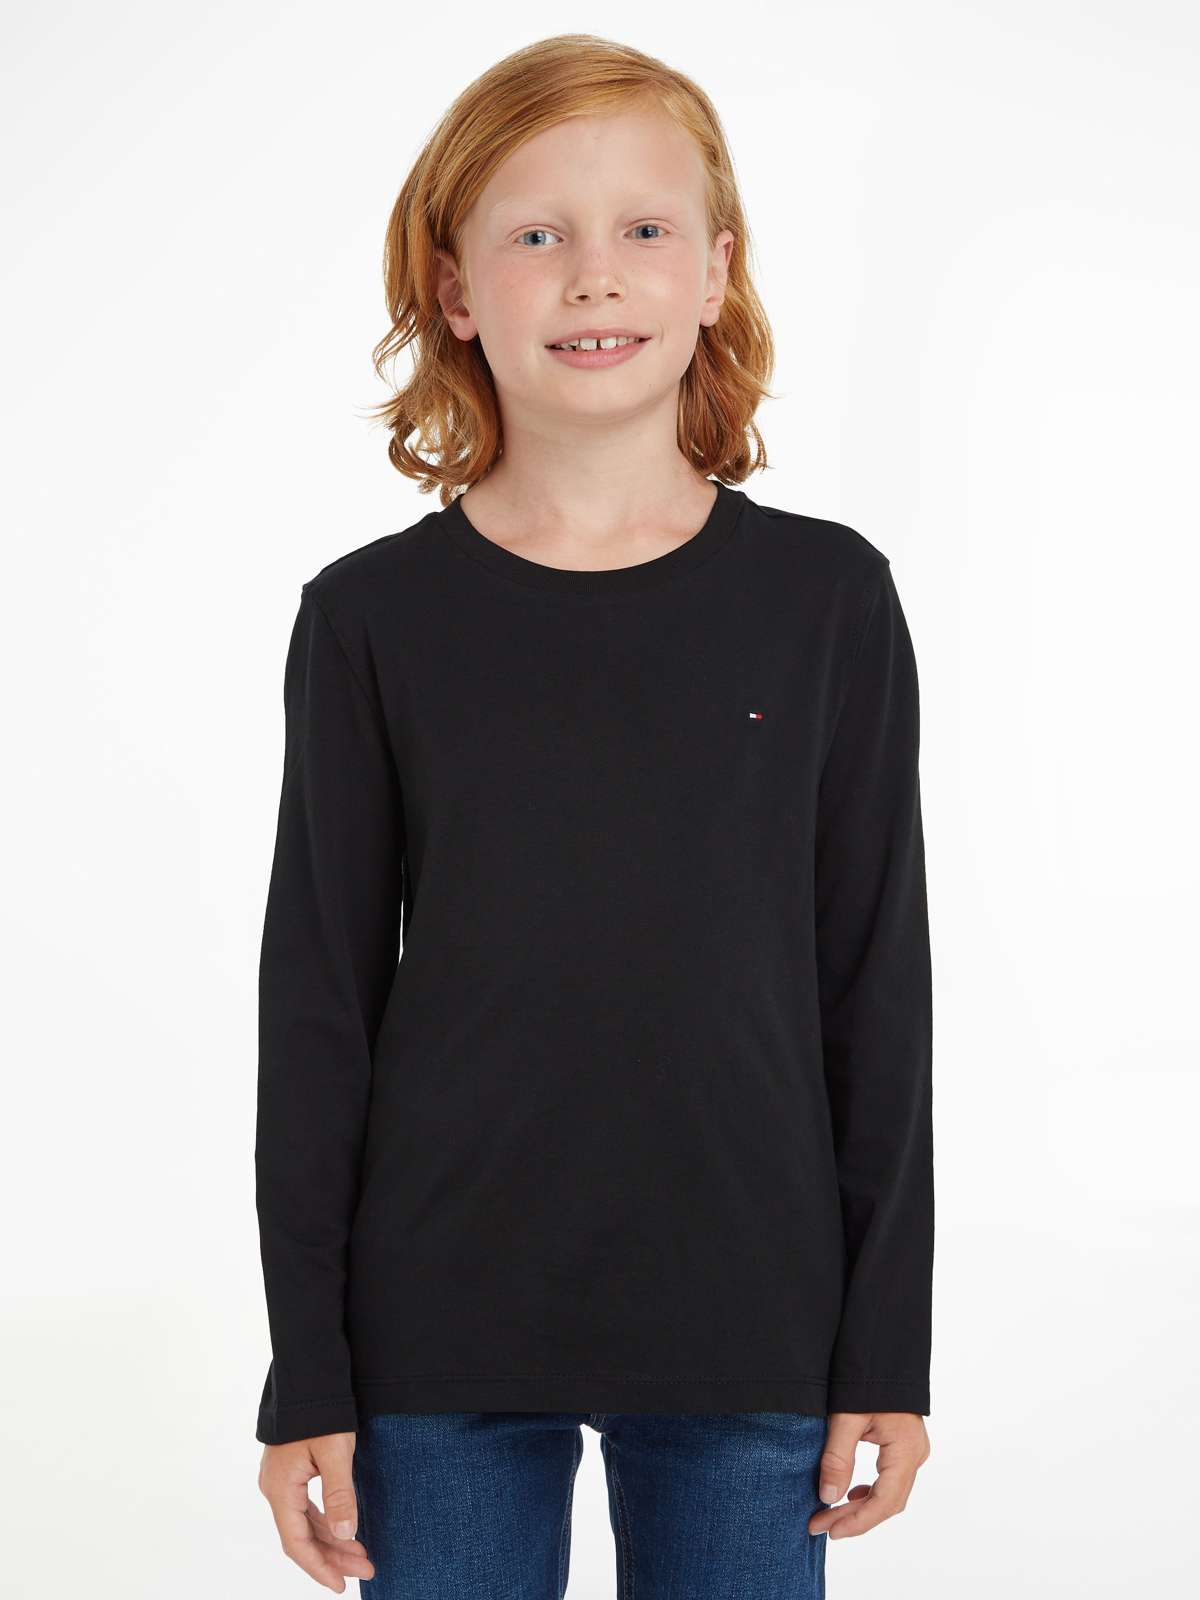 Рубашка с длинным рукавом детская Kids Junior MiniMe, для мальчика